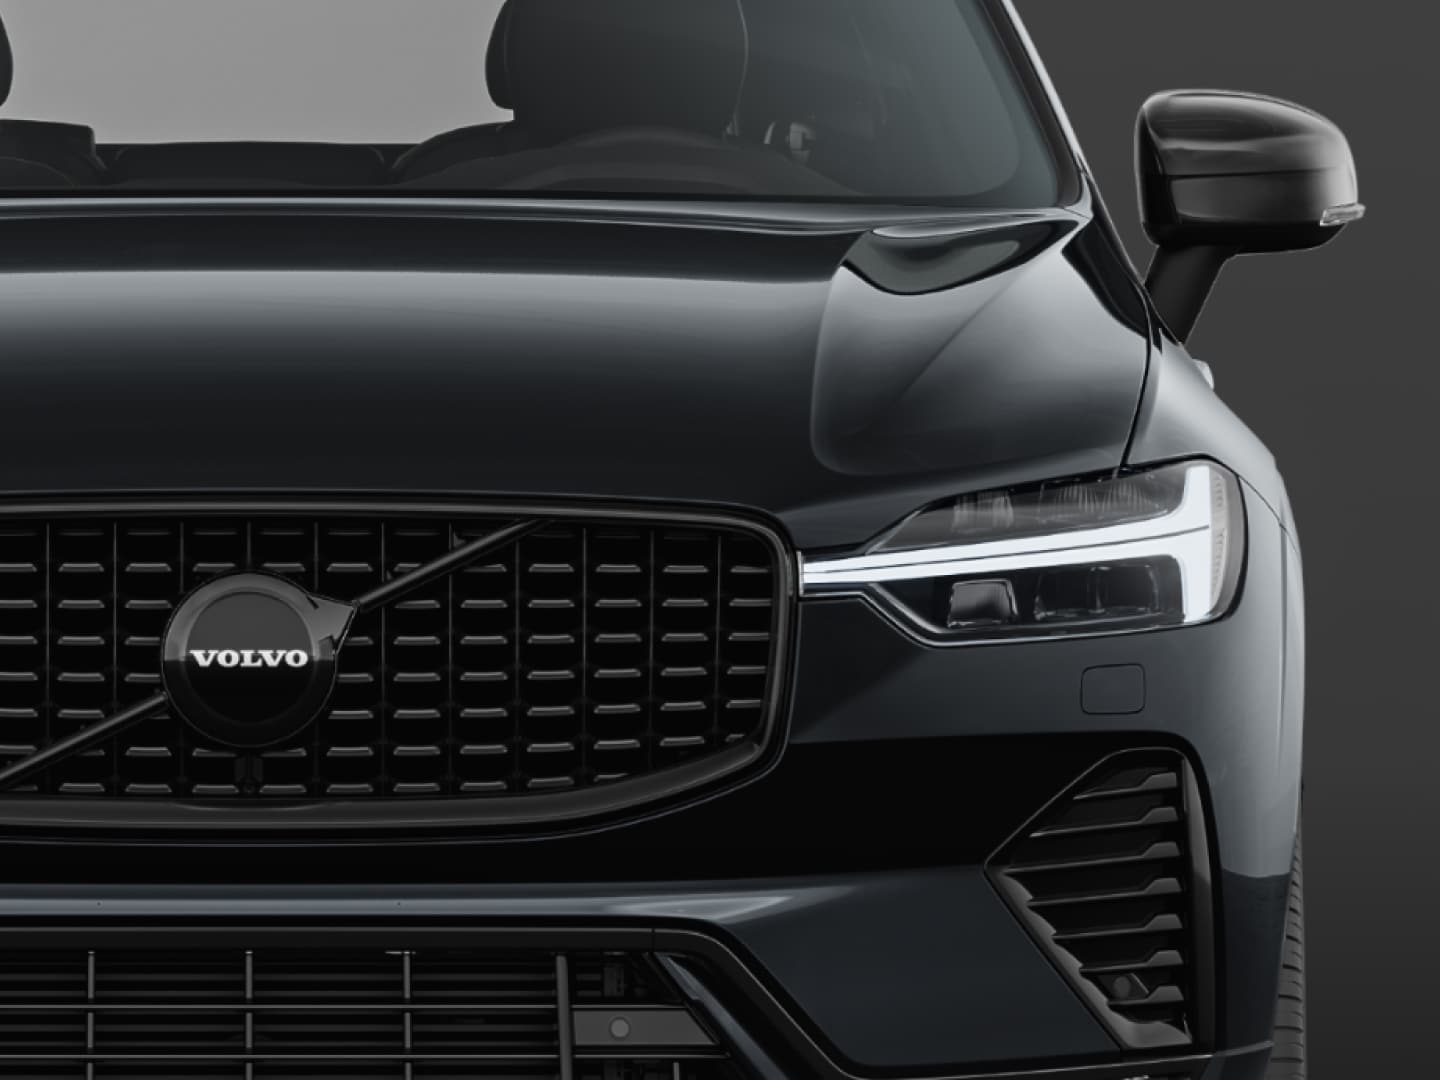 Detalles exteriores en negro en el Volvo XC60 Mild hybrid Black Edition.